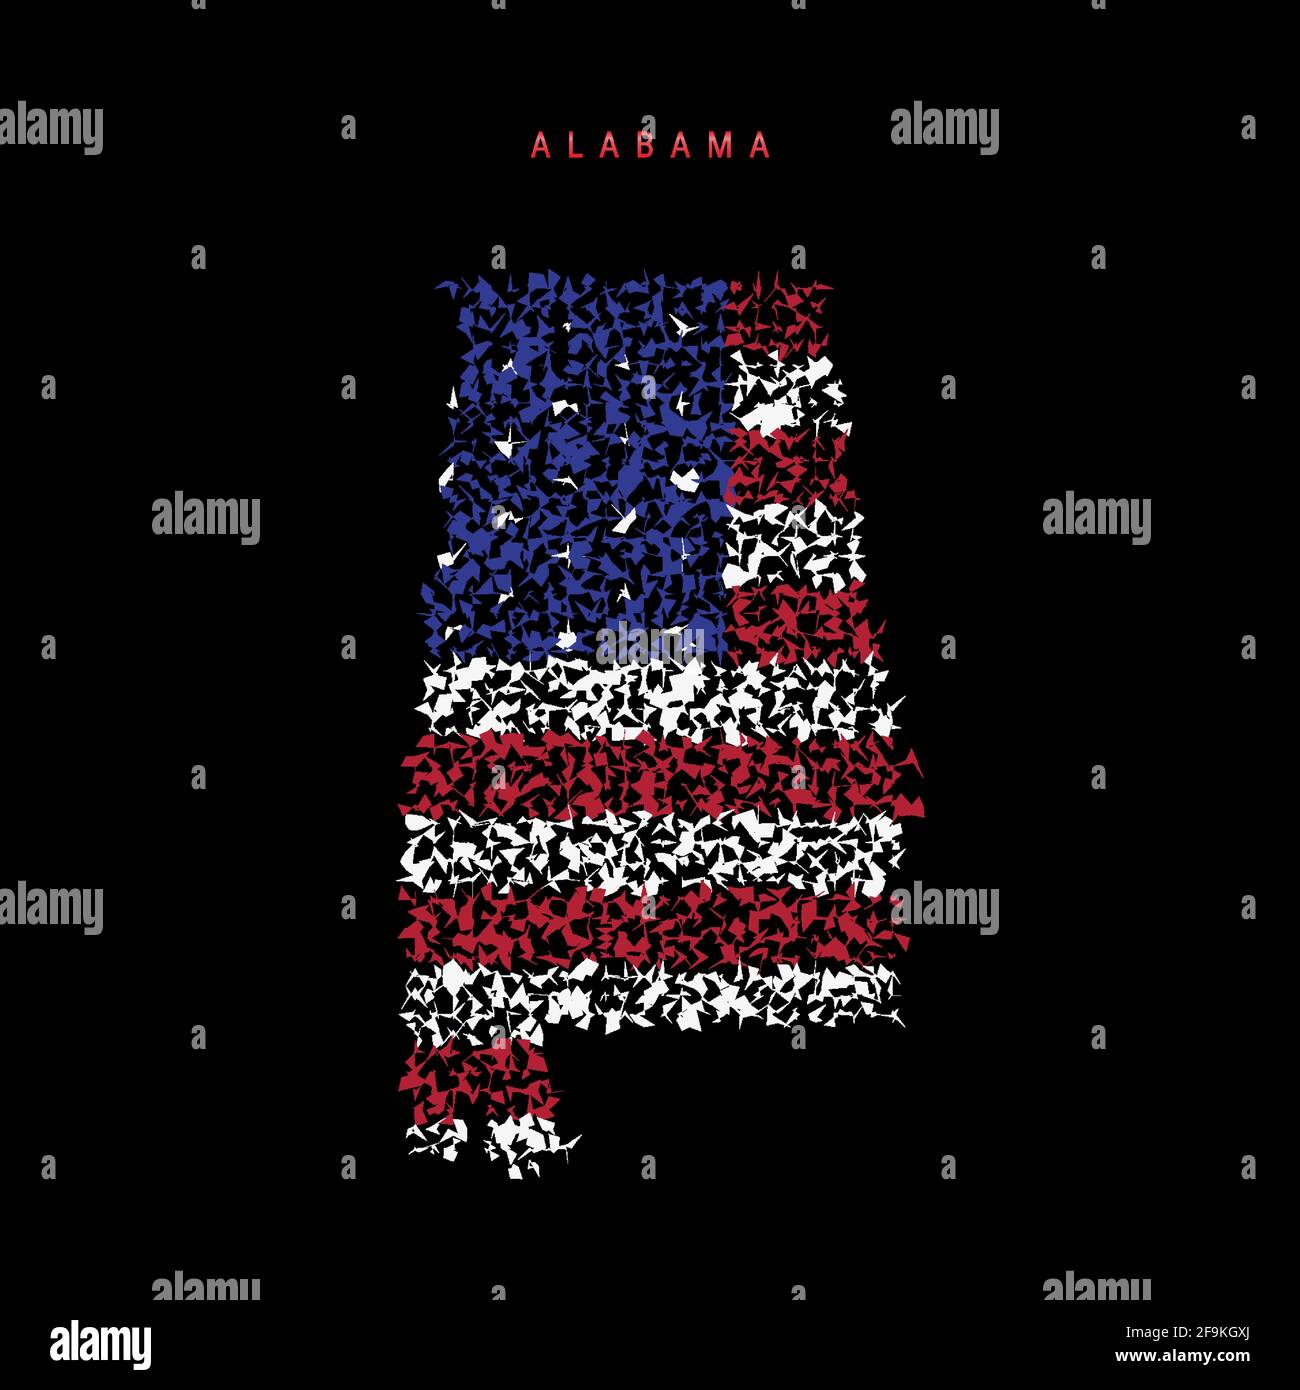 Carte du drapeau de l'État américain de l'Alabama, motif de particules chaotiques aux couleurs du drapeau américain. Illustration vectorielle isolée sur fond noir. Illustration de Vecteur